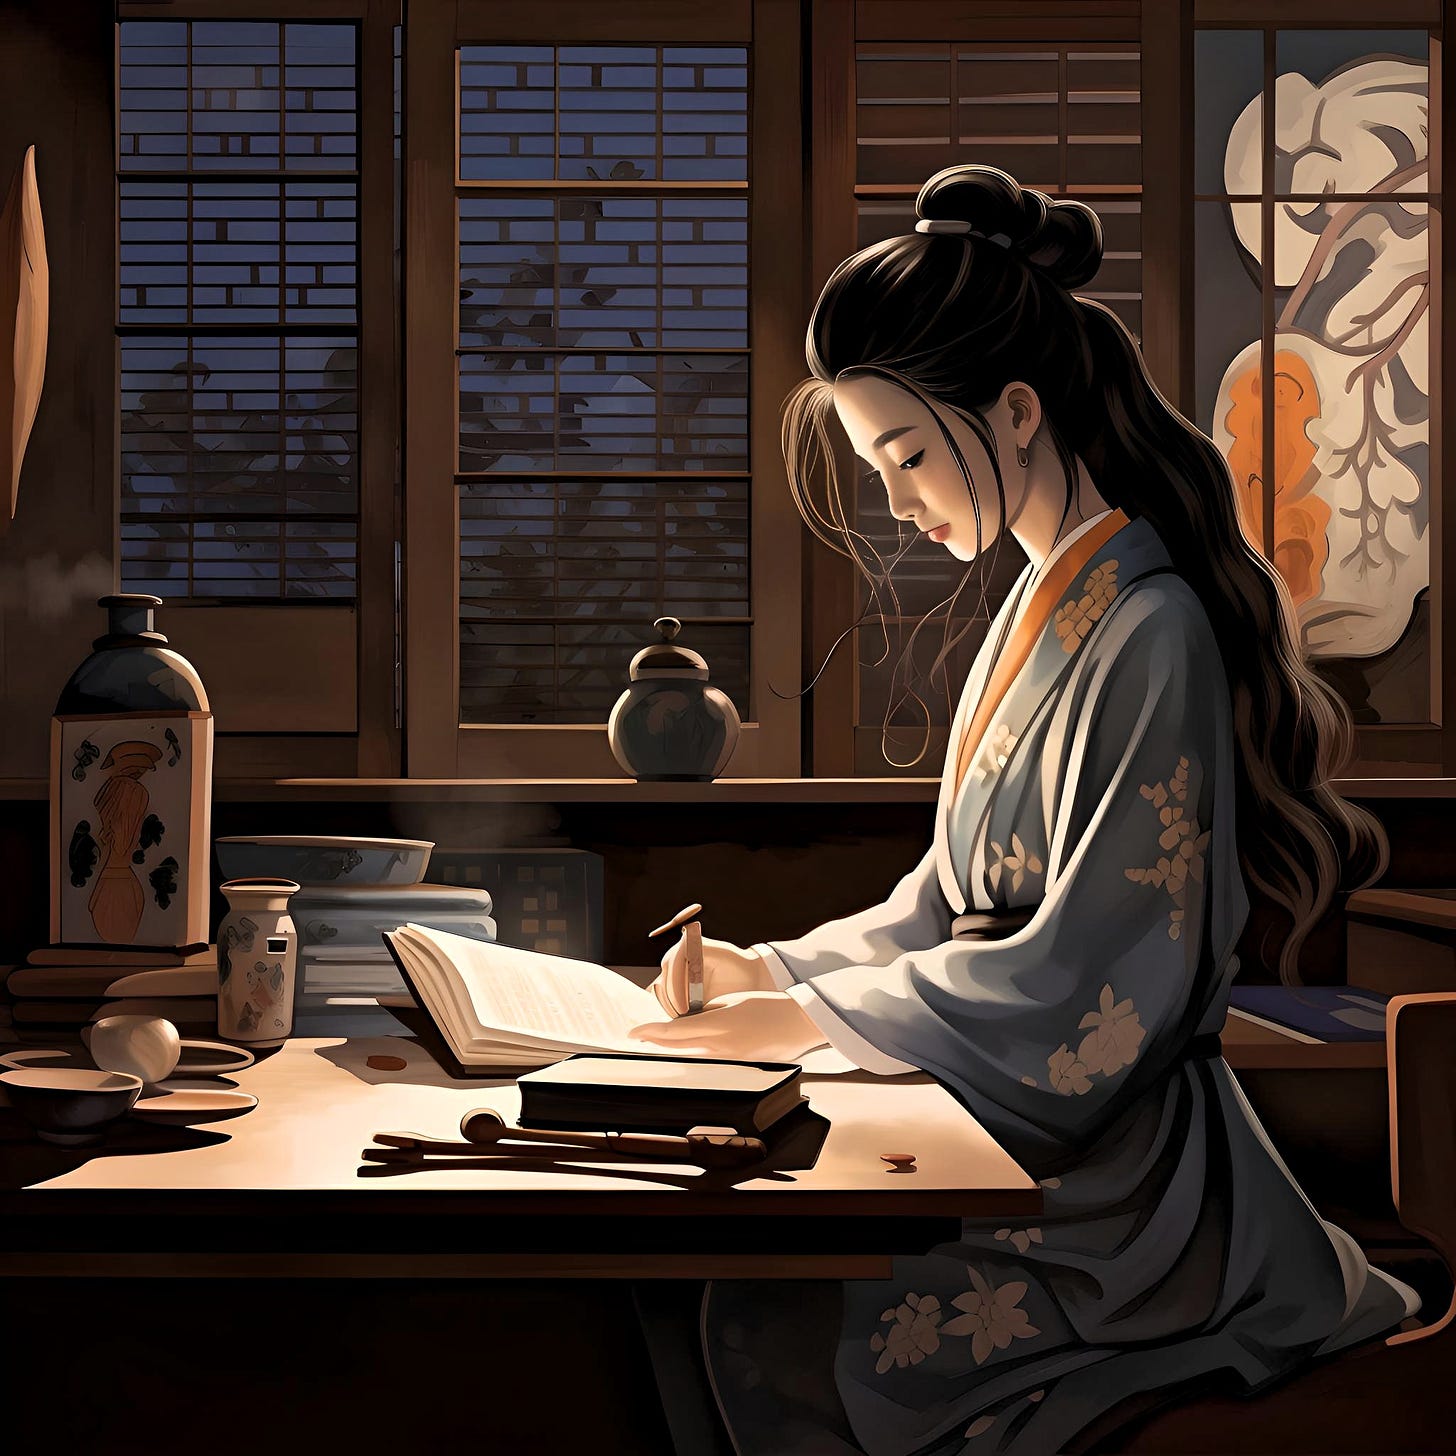 Ilustración de una joven japonesa con un kimono tradicional leyendo sentada en una mesa.